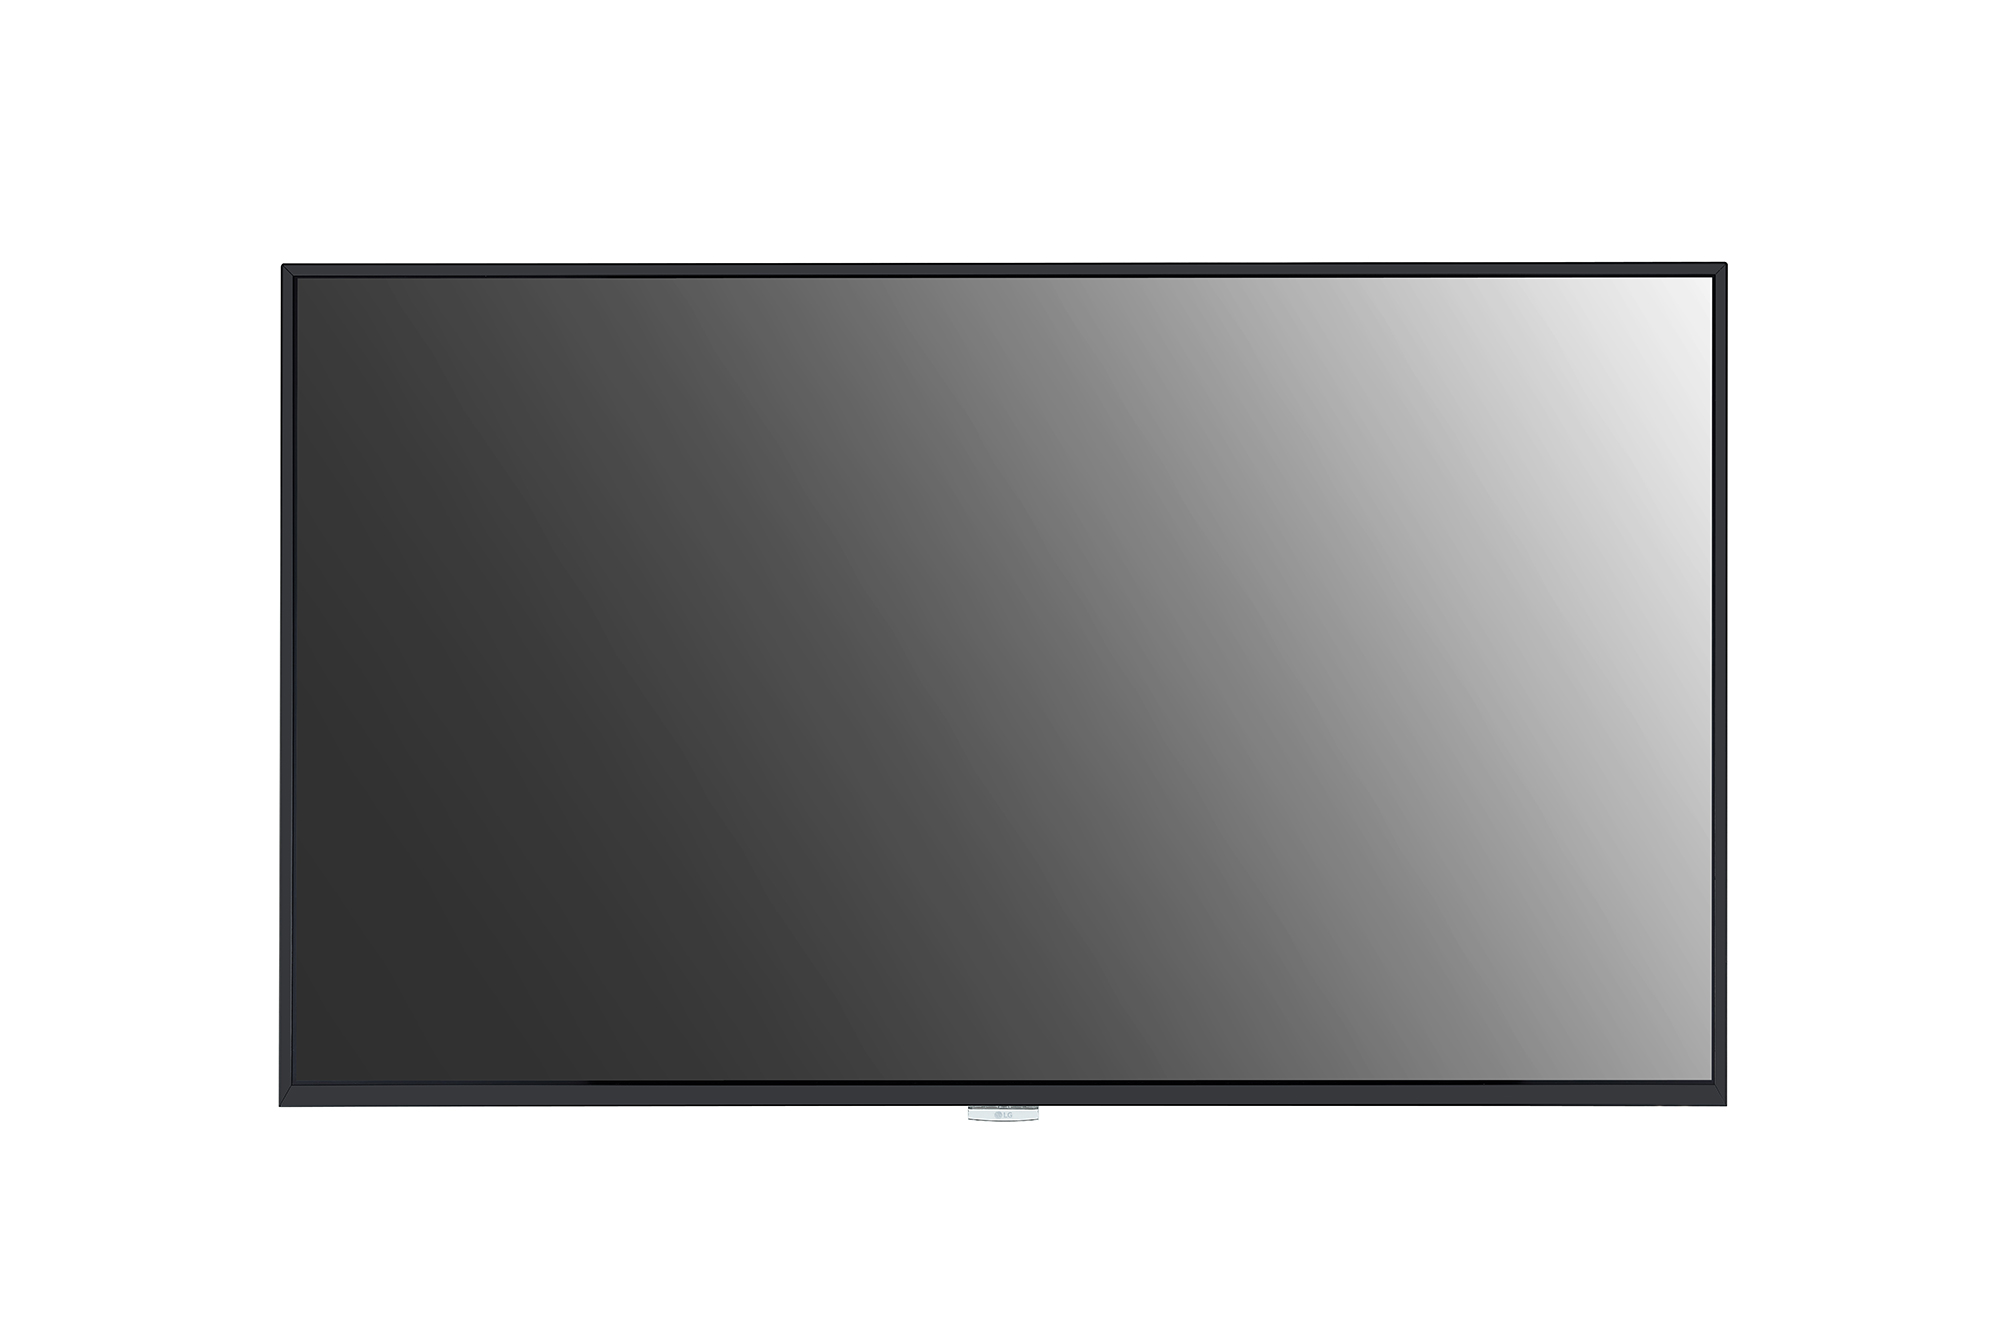 Недорогие плоские телевизоры. ЖК панель LG 98uh5f. Панель LG 65uh5f-b. ЖК панель LG 55uh5c-b. Led панель LG 32sm5ke-b.